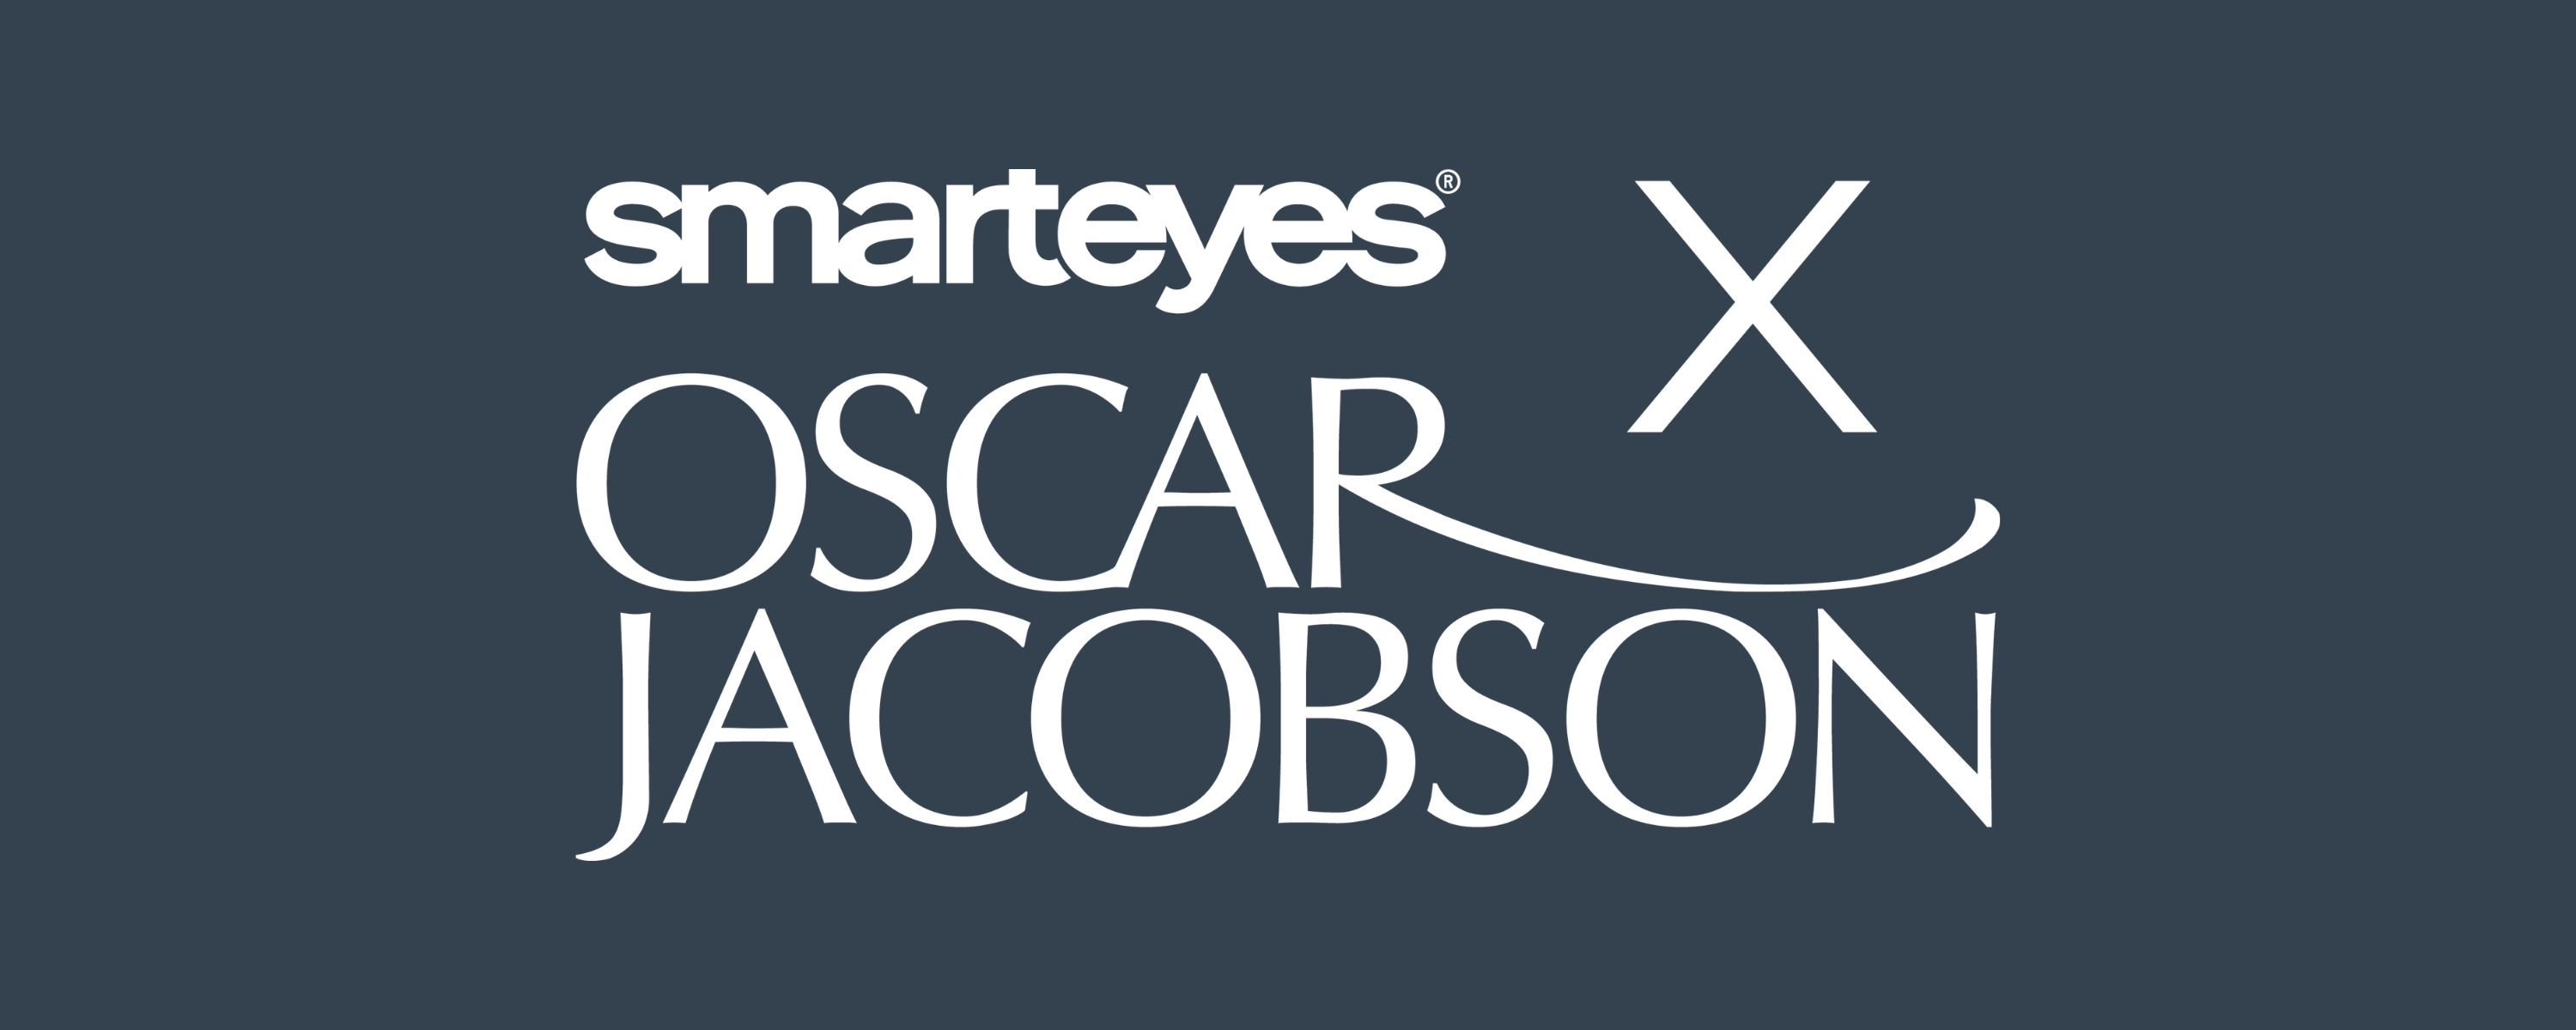 Oscar Jacobson X Smarteyes